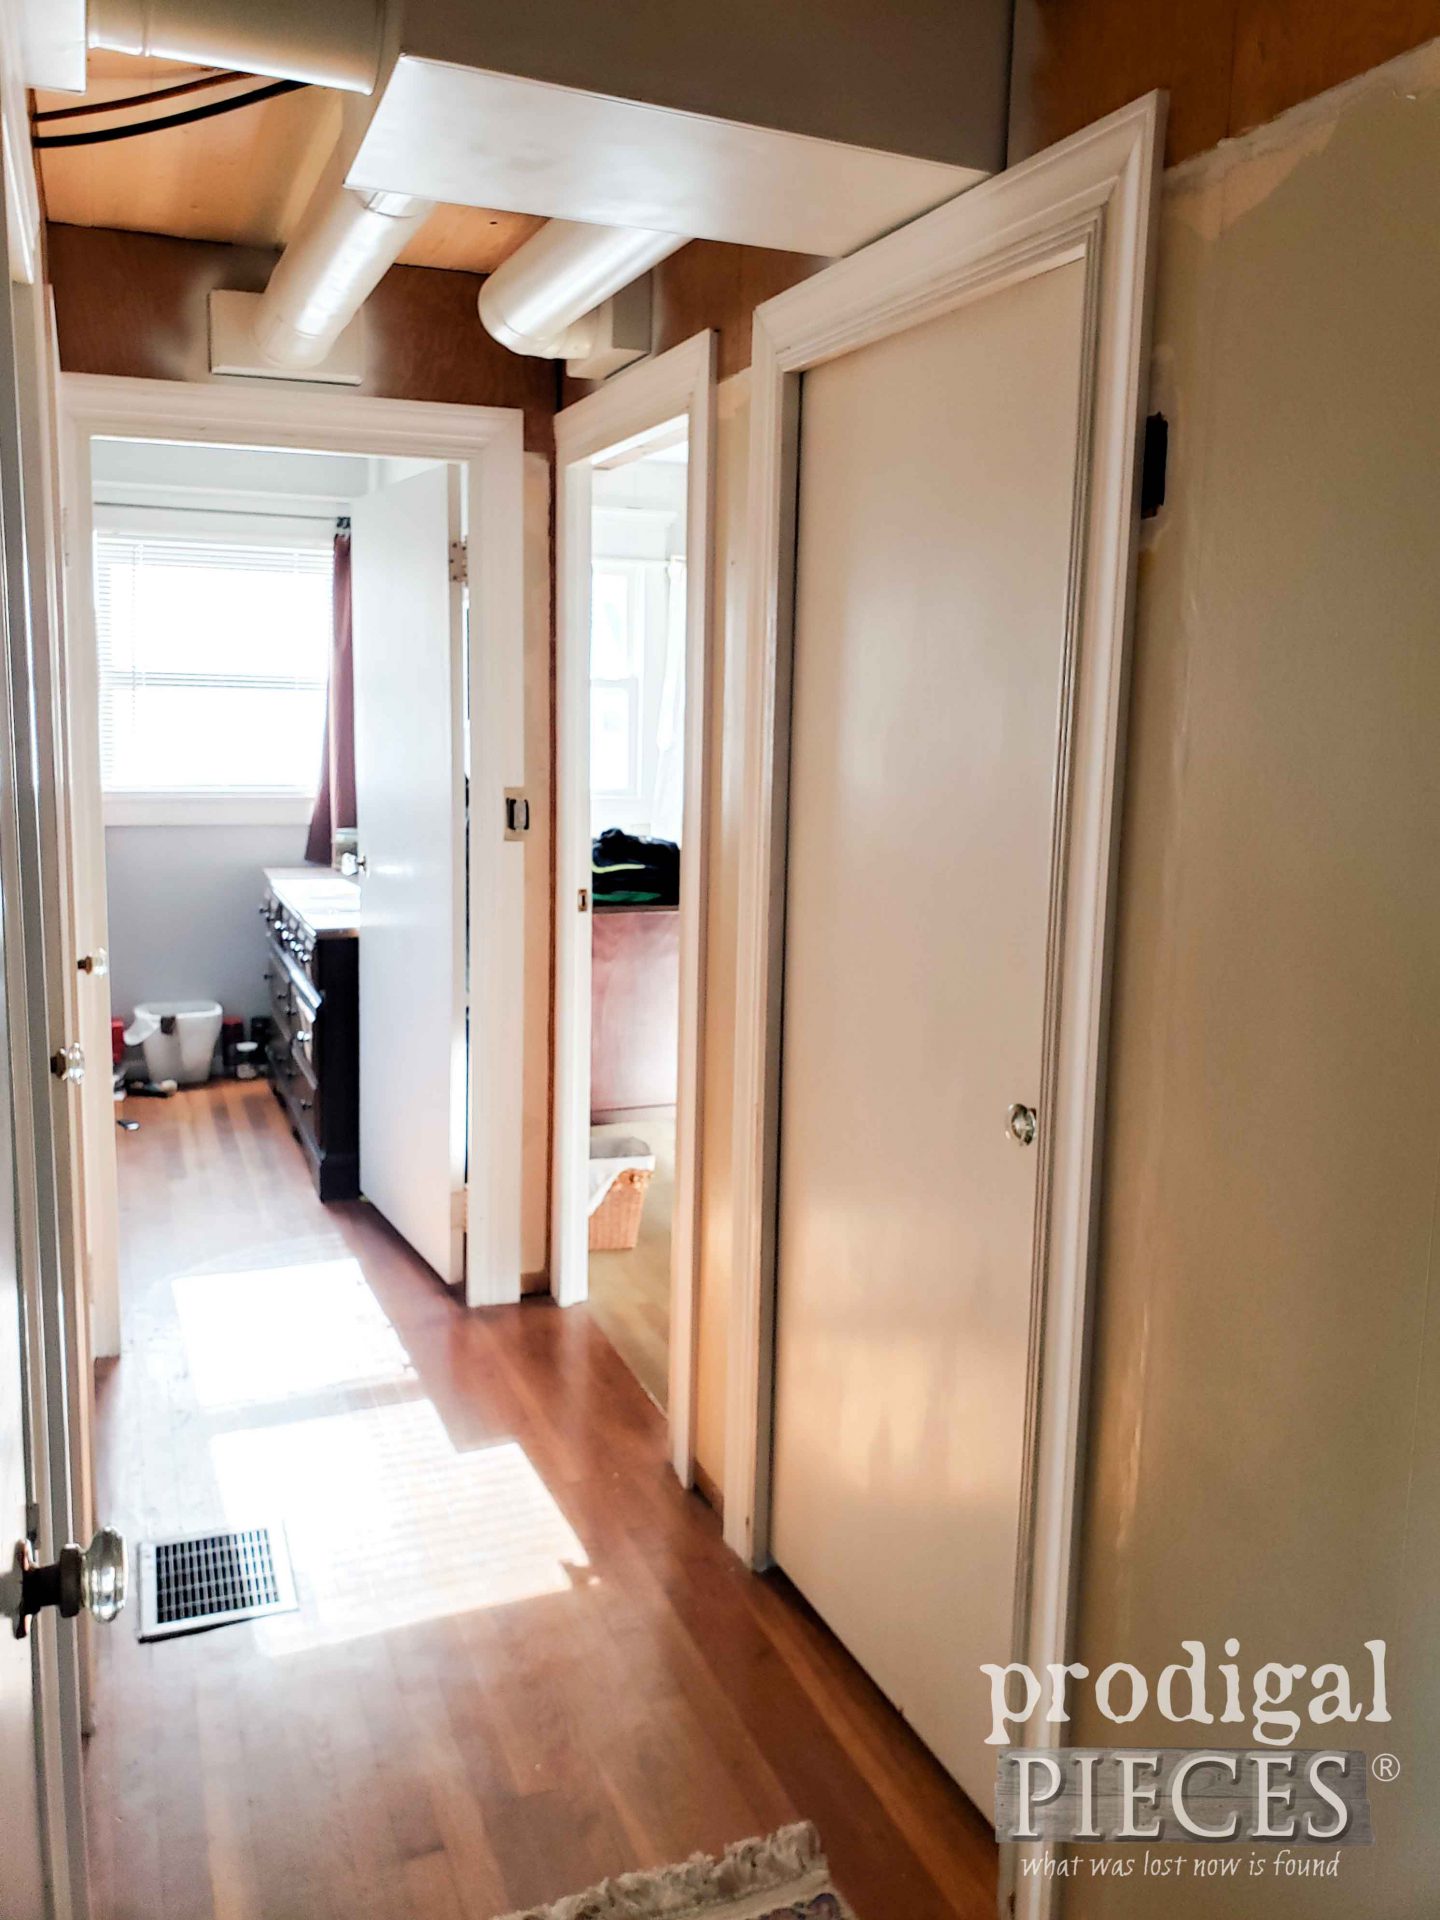 New DIY Doorway Trim | prodigalpieces.com #prodigalpieces